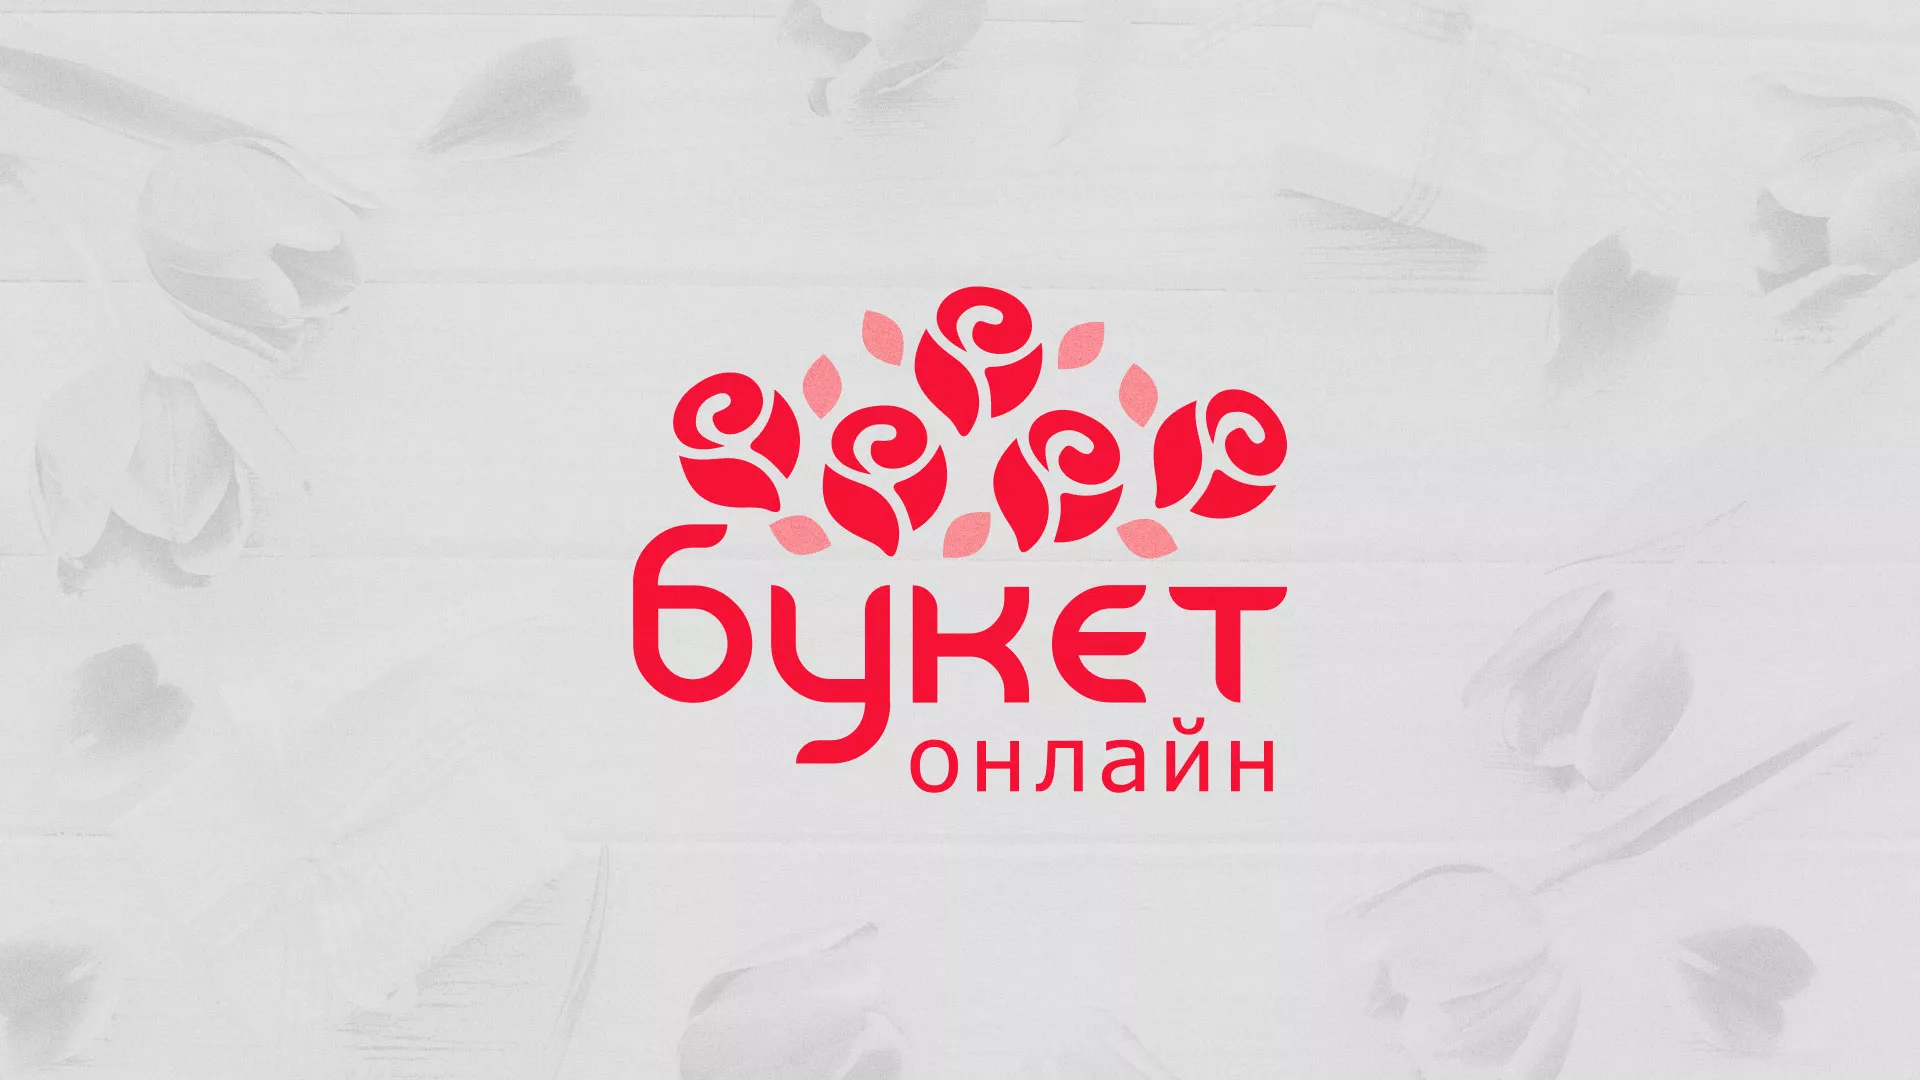 Создание интернет-магазина «Букет-онлайн» по цветам в Среднеколымске